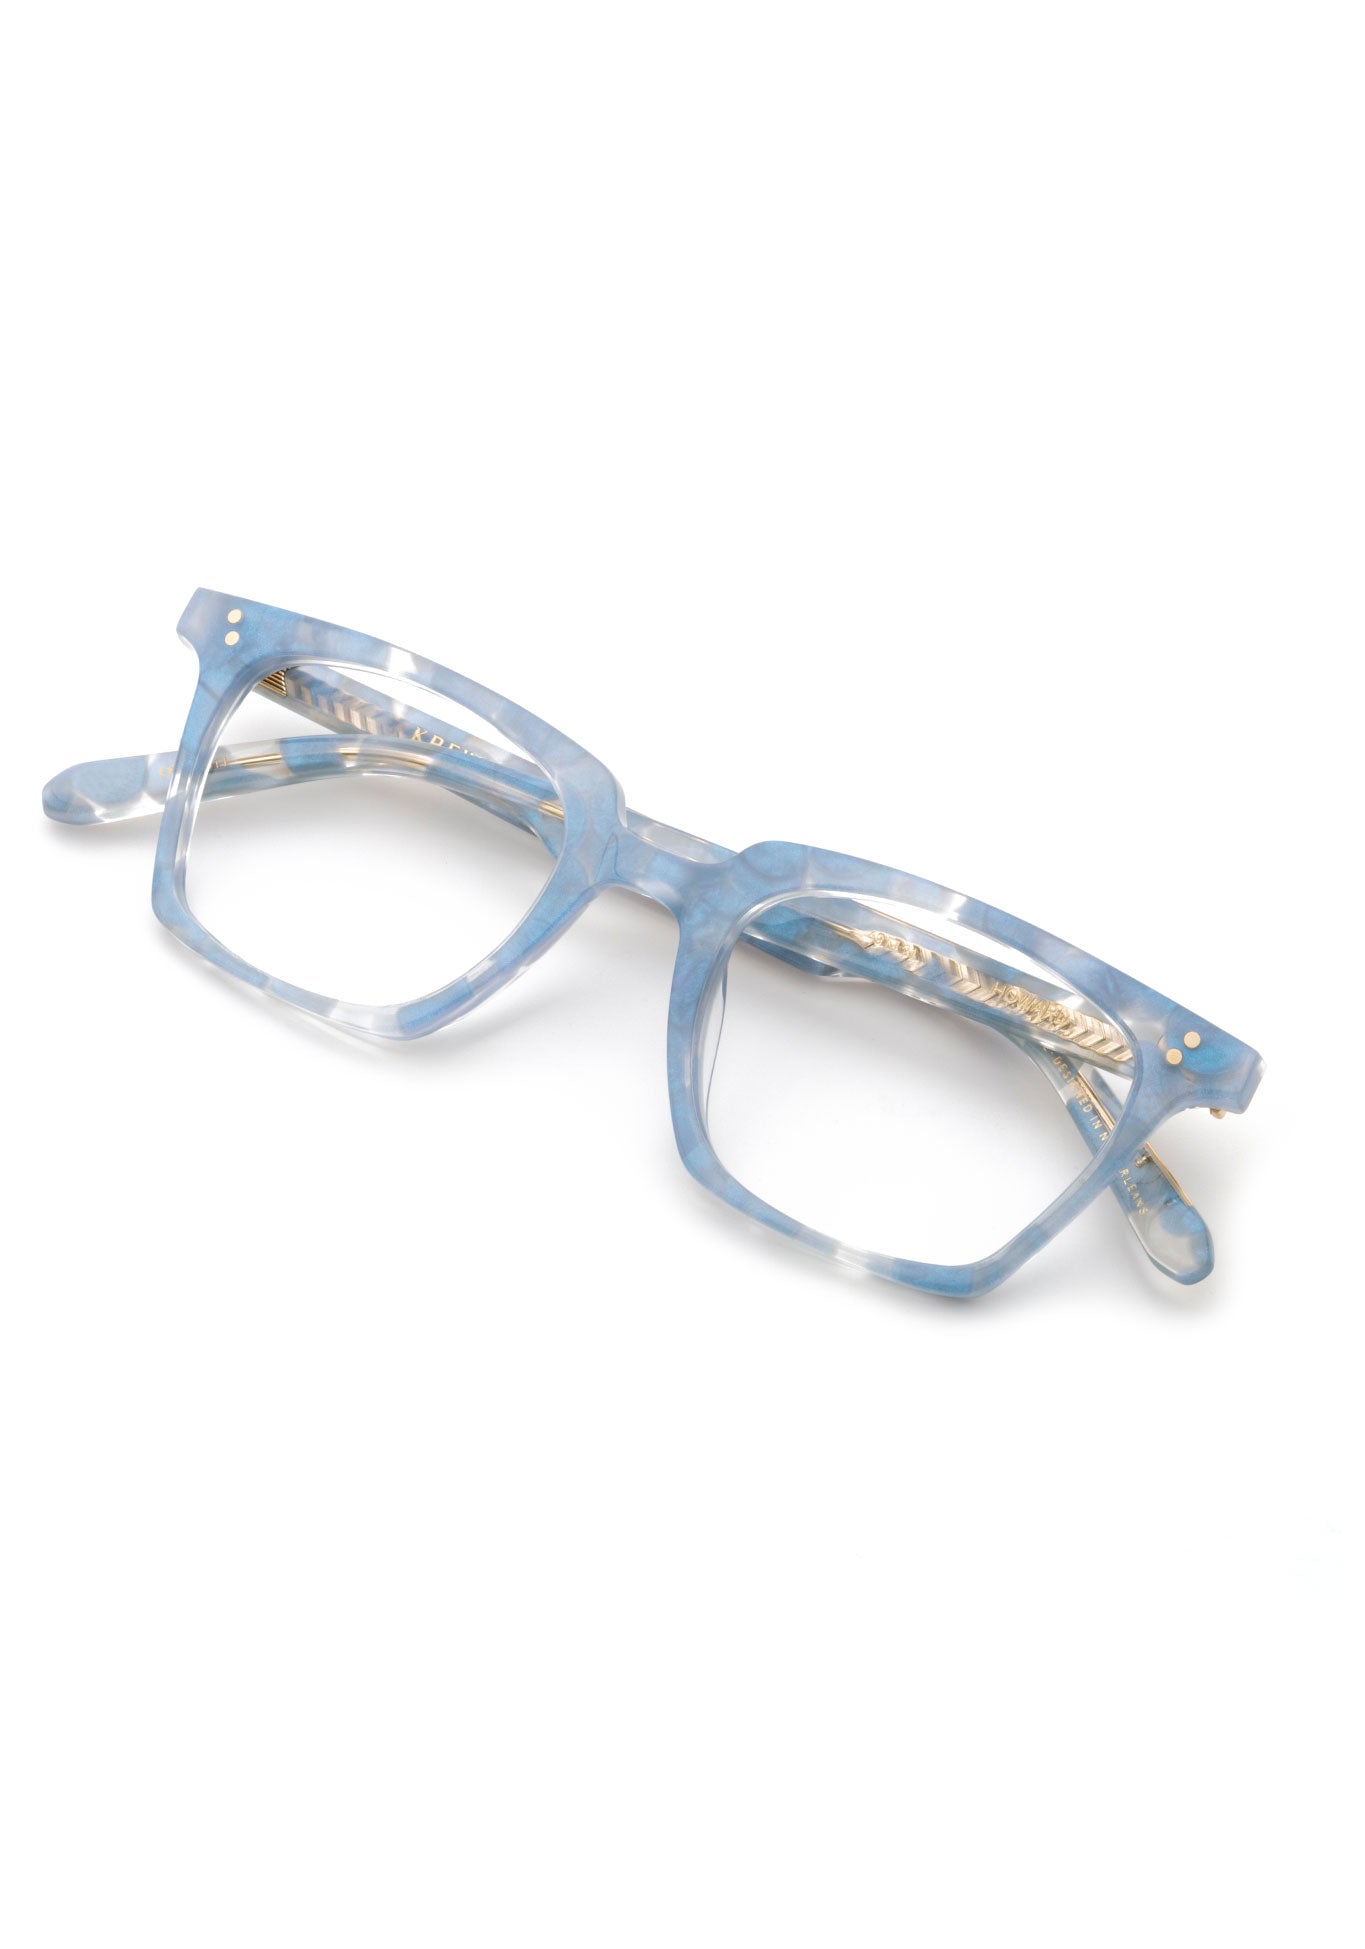 KREWE HOWARD (49) | Opaline Handcrafted, luxury, custom designer blue acetate eyeglasses